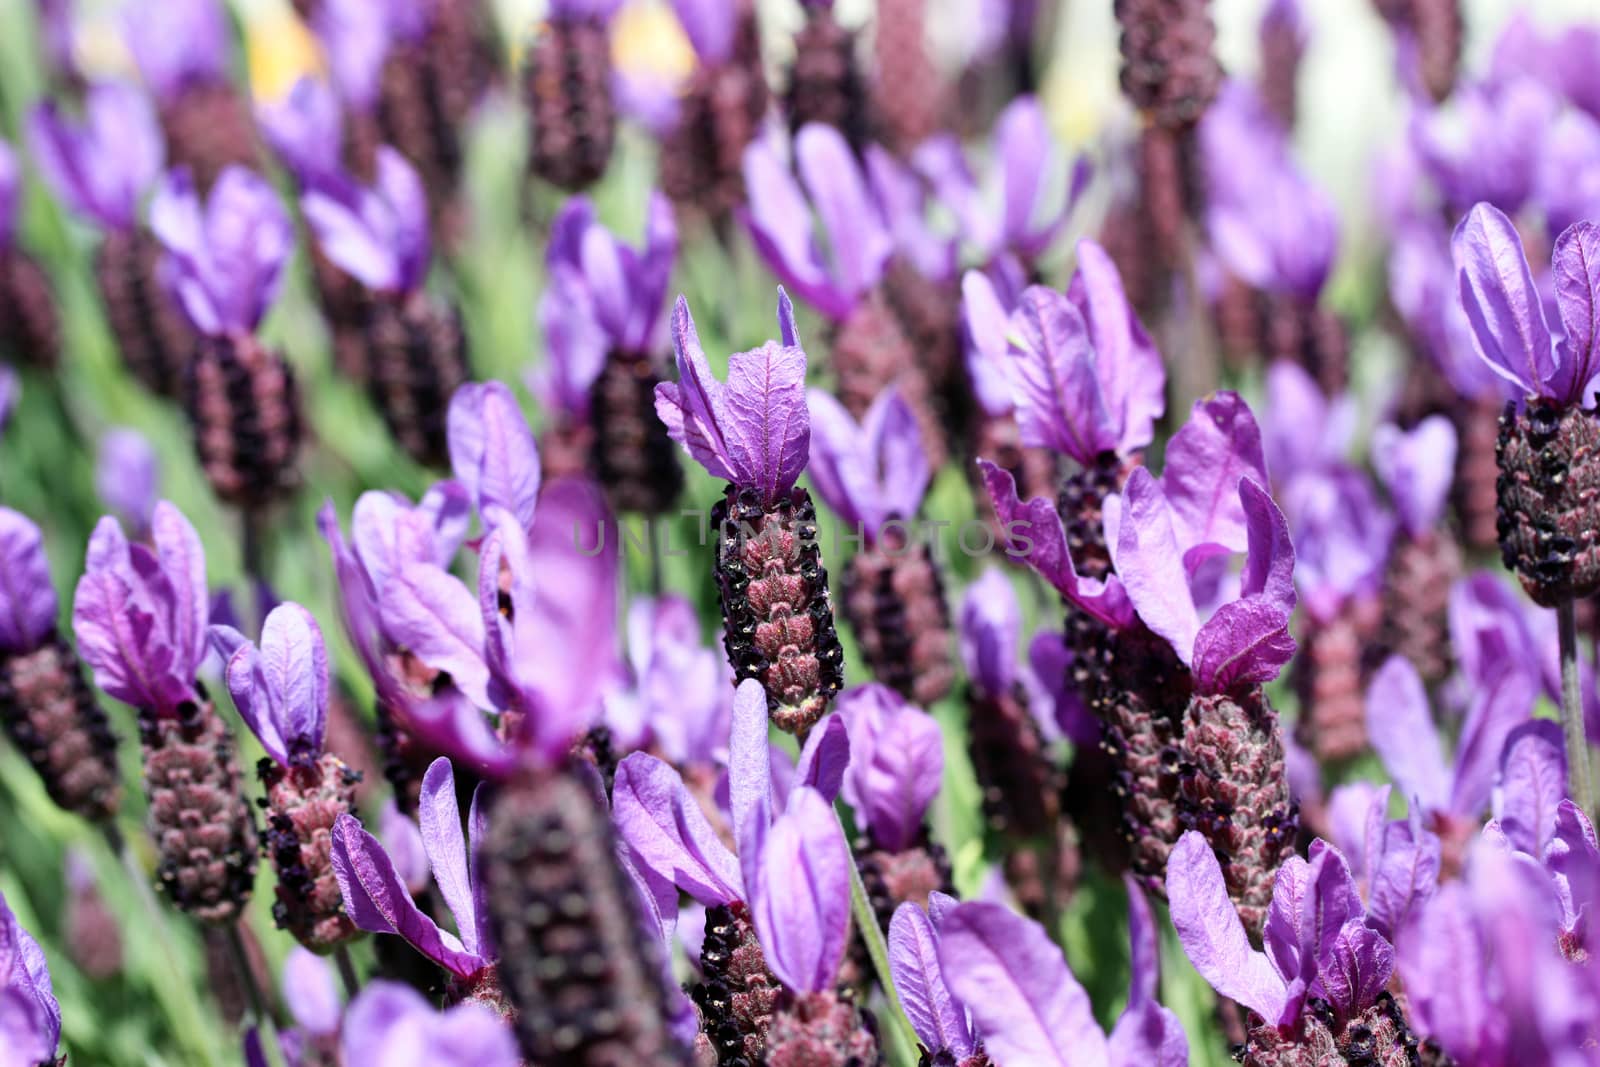 Field of purple lavendar flowers